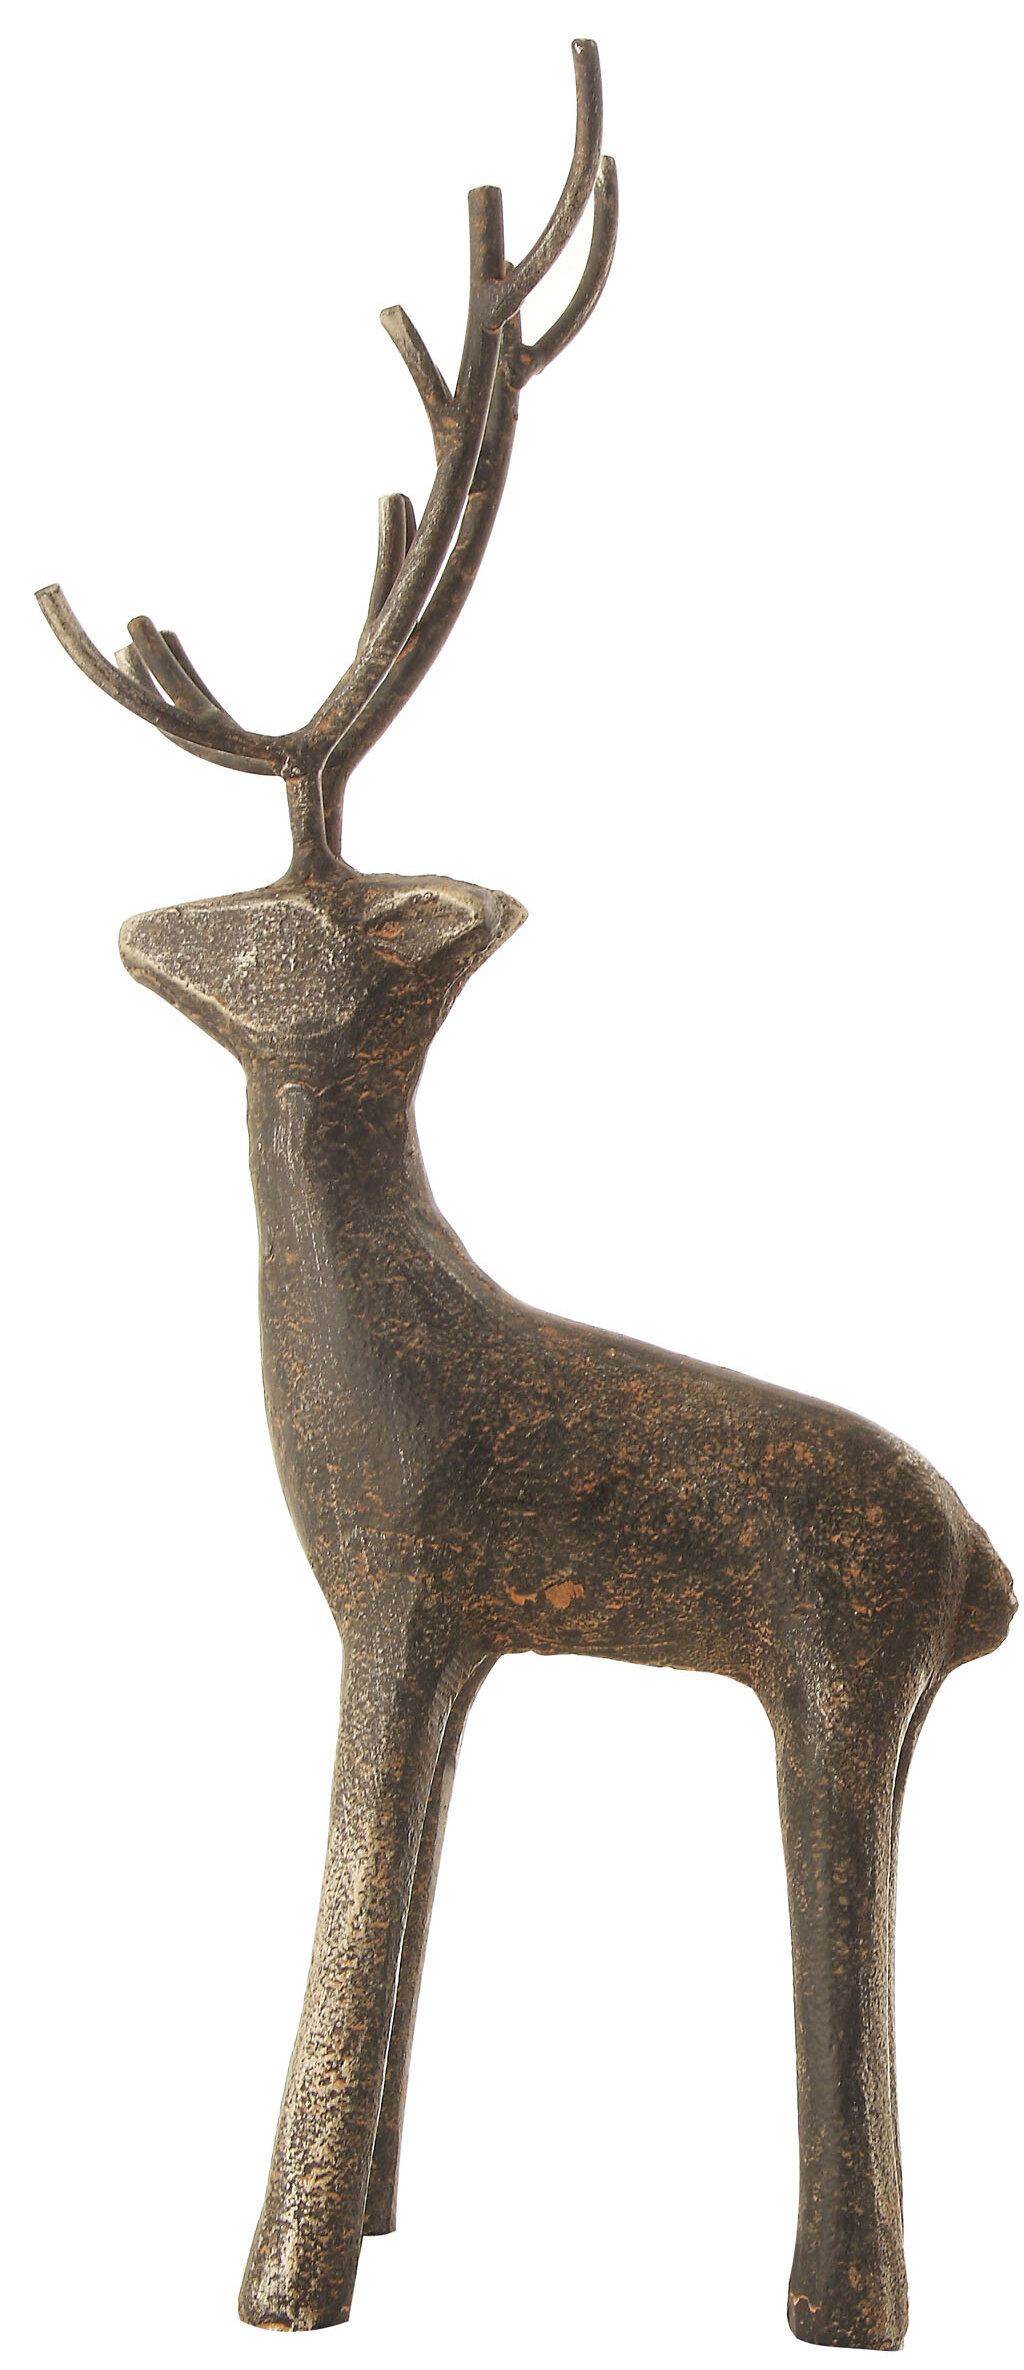 metal deer figurine